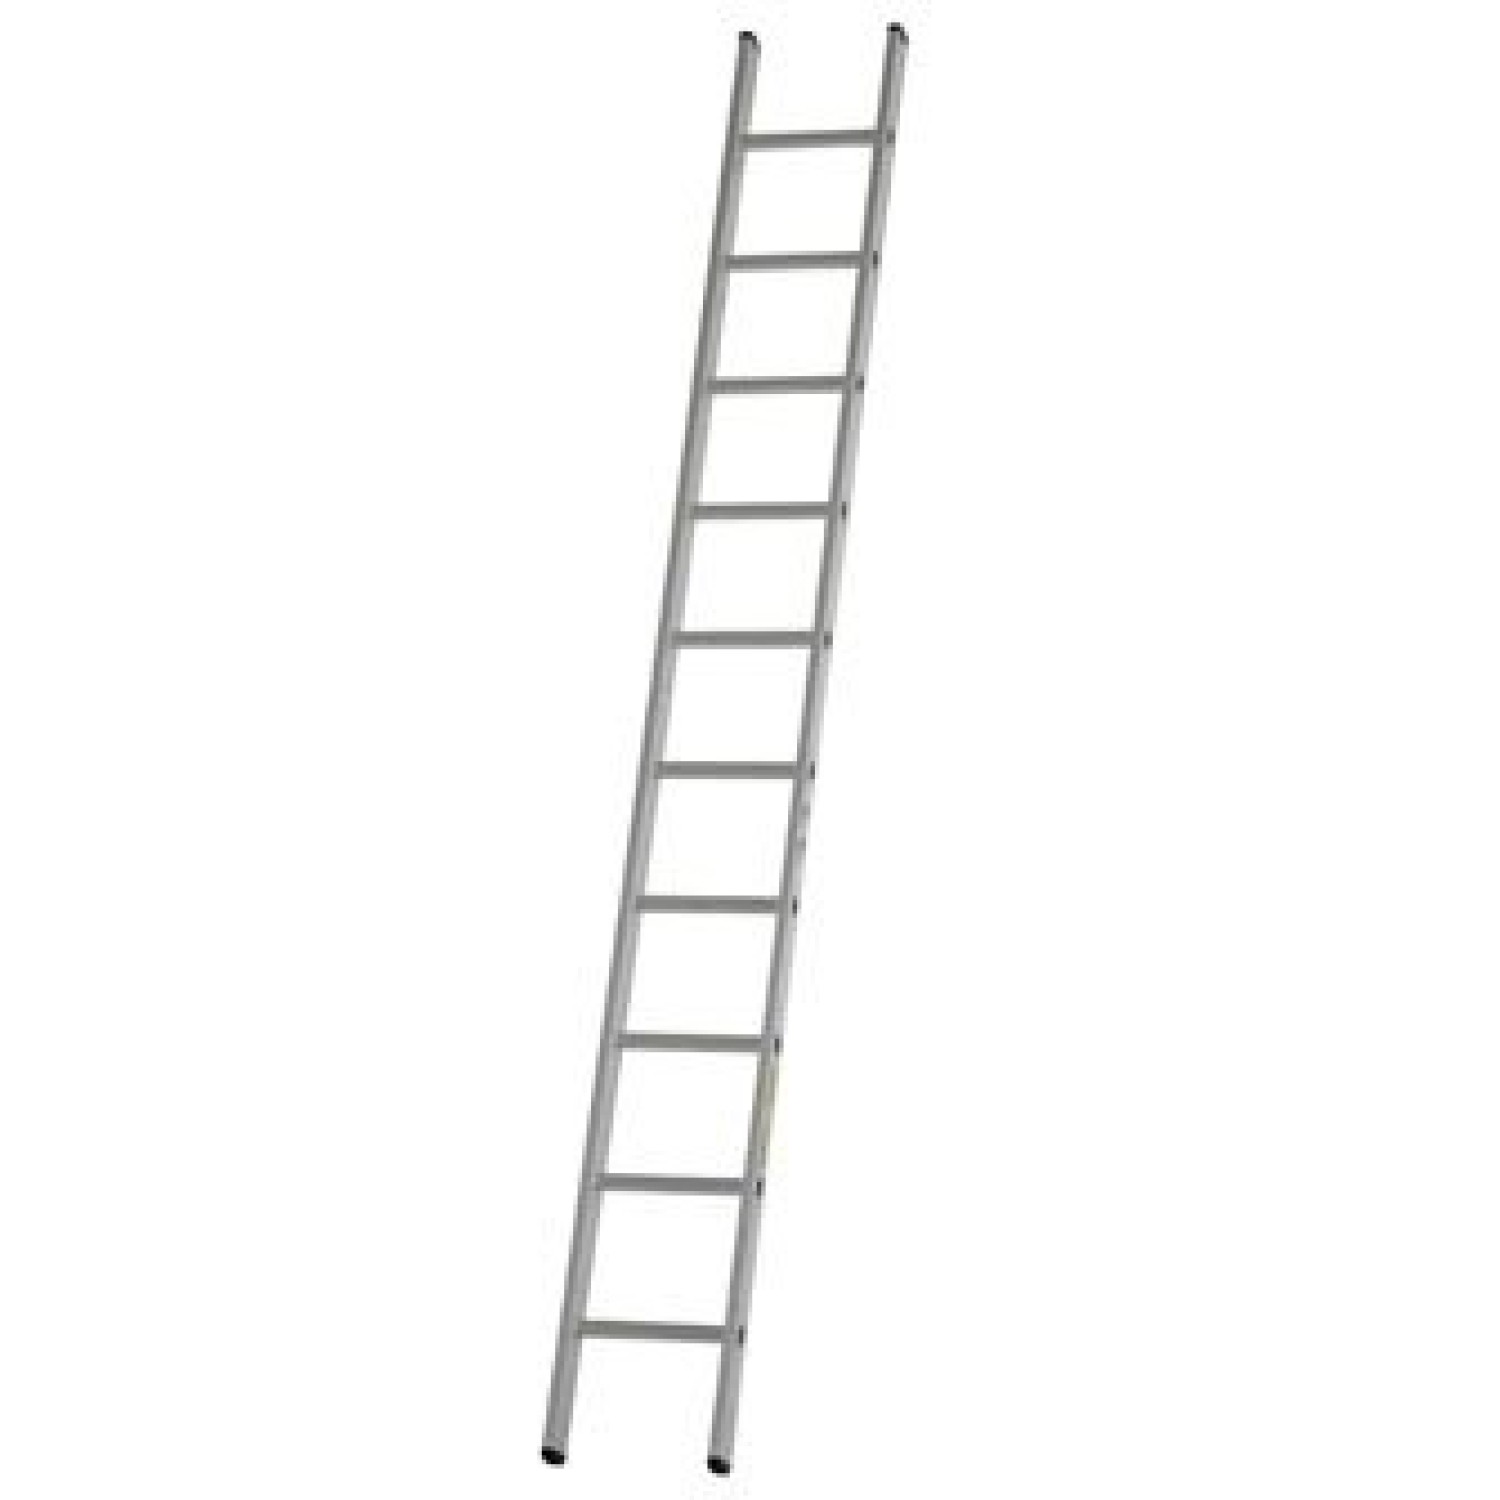 Dirks Enkele rechte ladder 5.25 meter gecoat